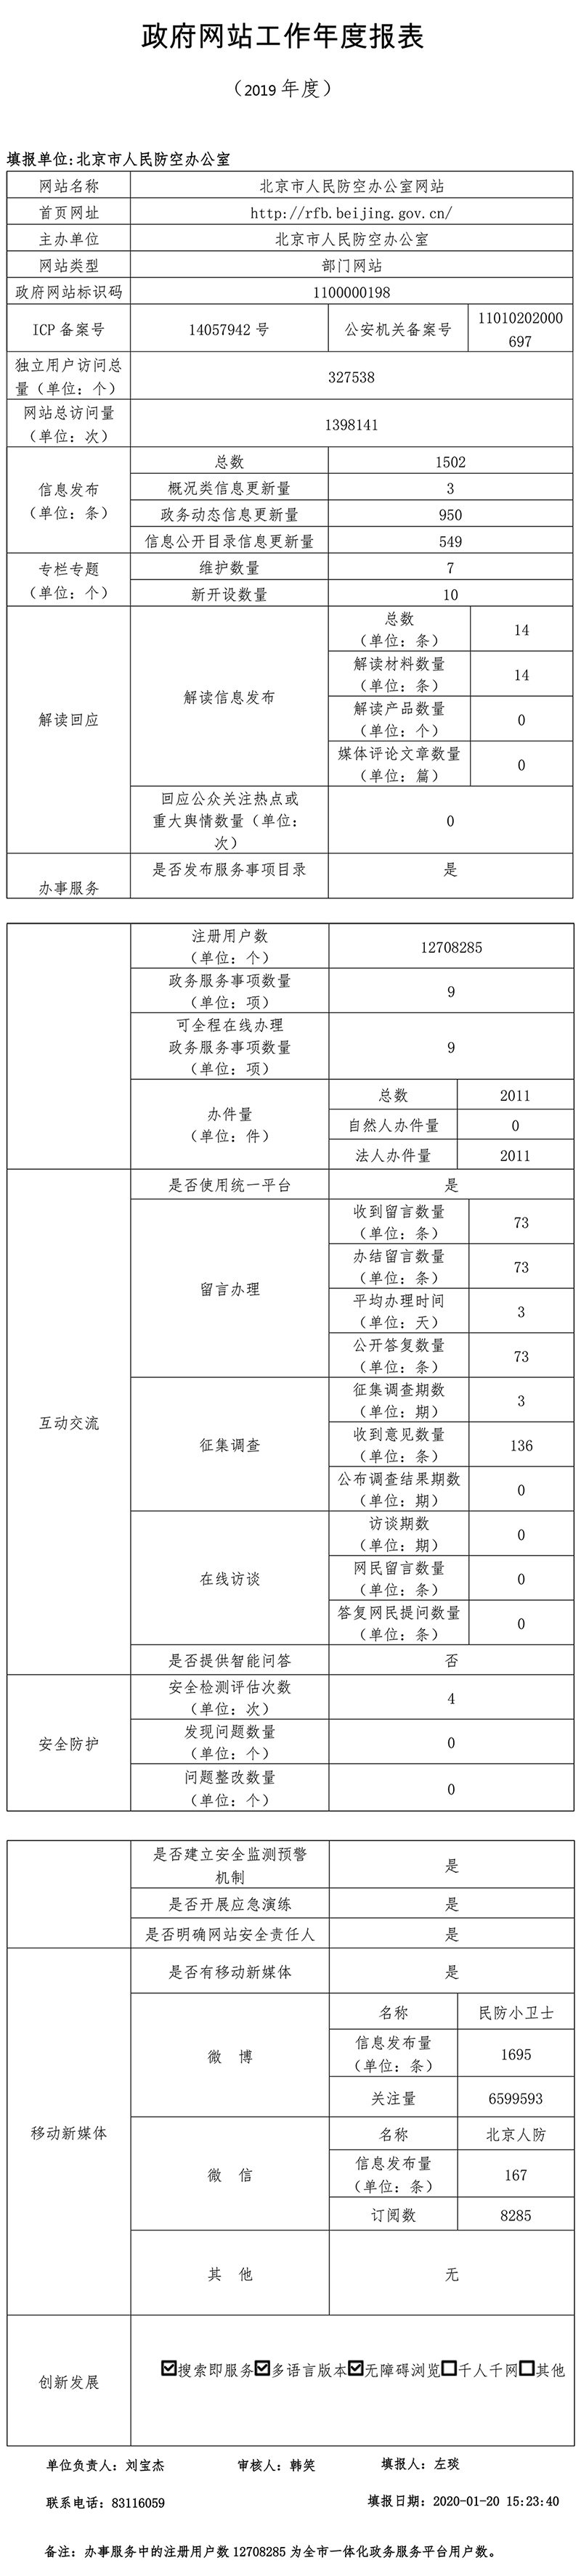 北京市人民防空辦公室2019年政府網站年度工作報表